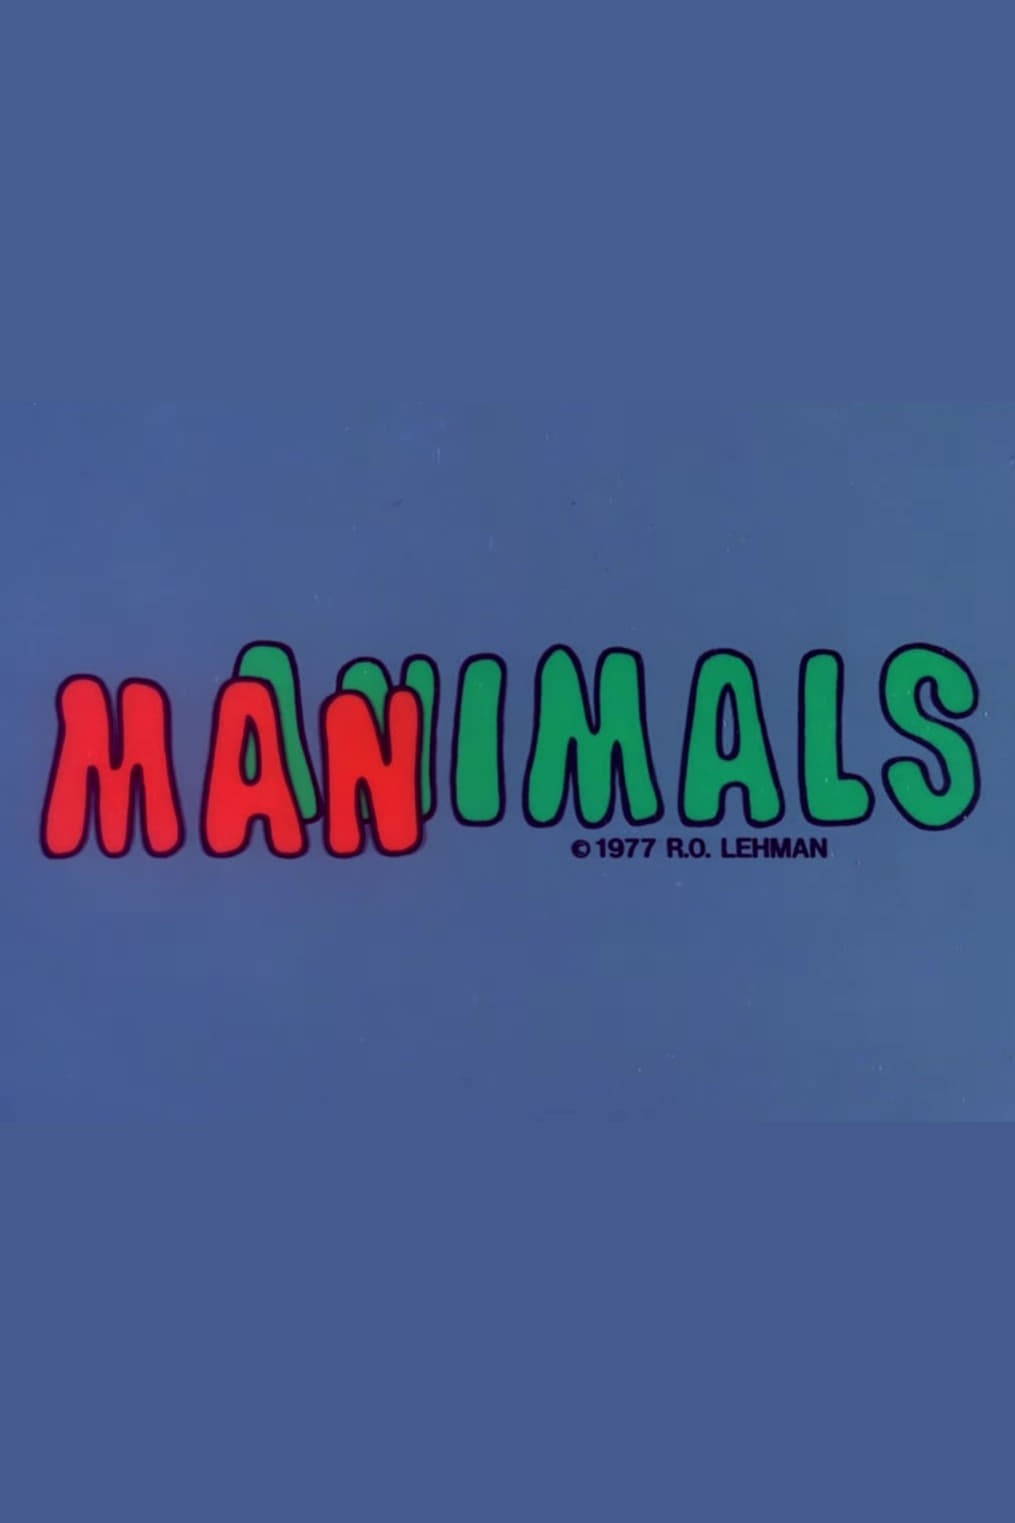 Manimals